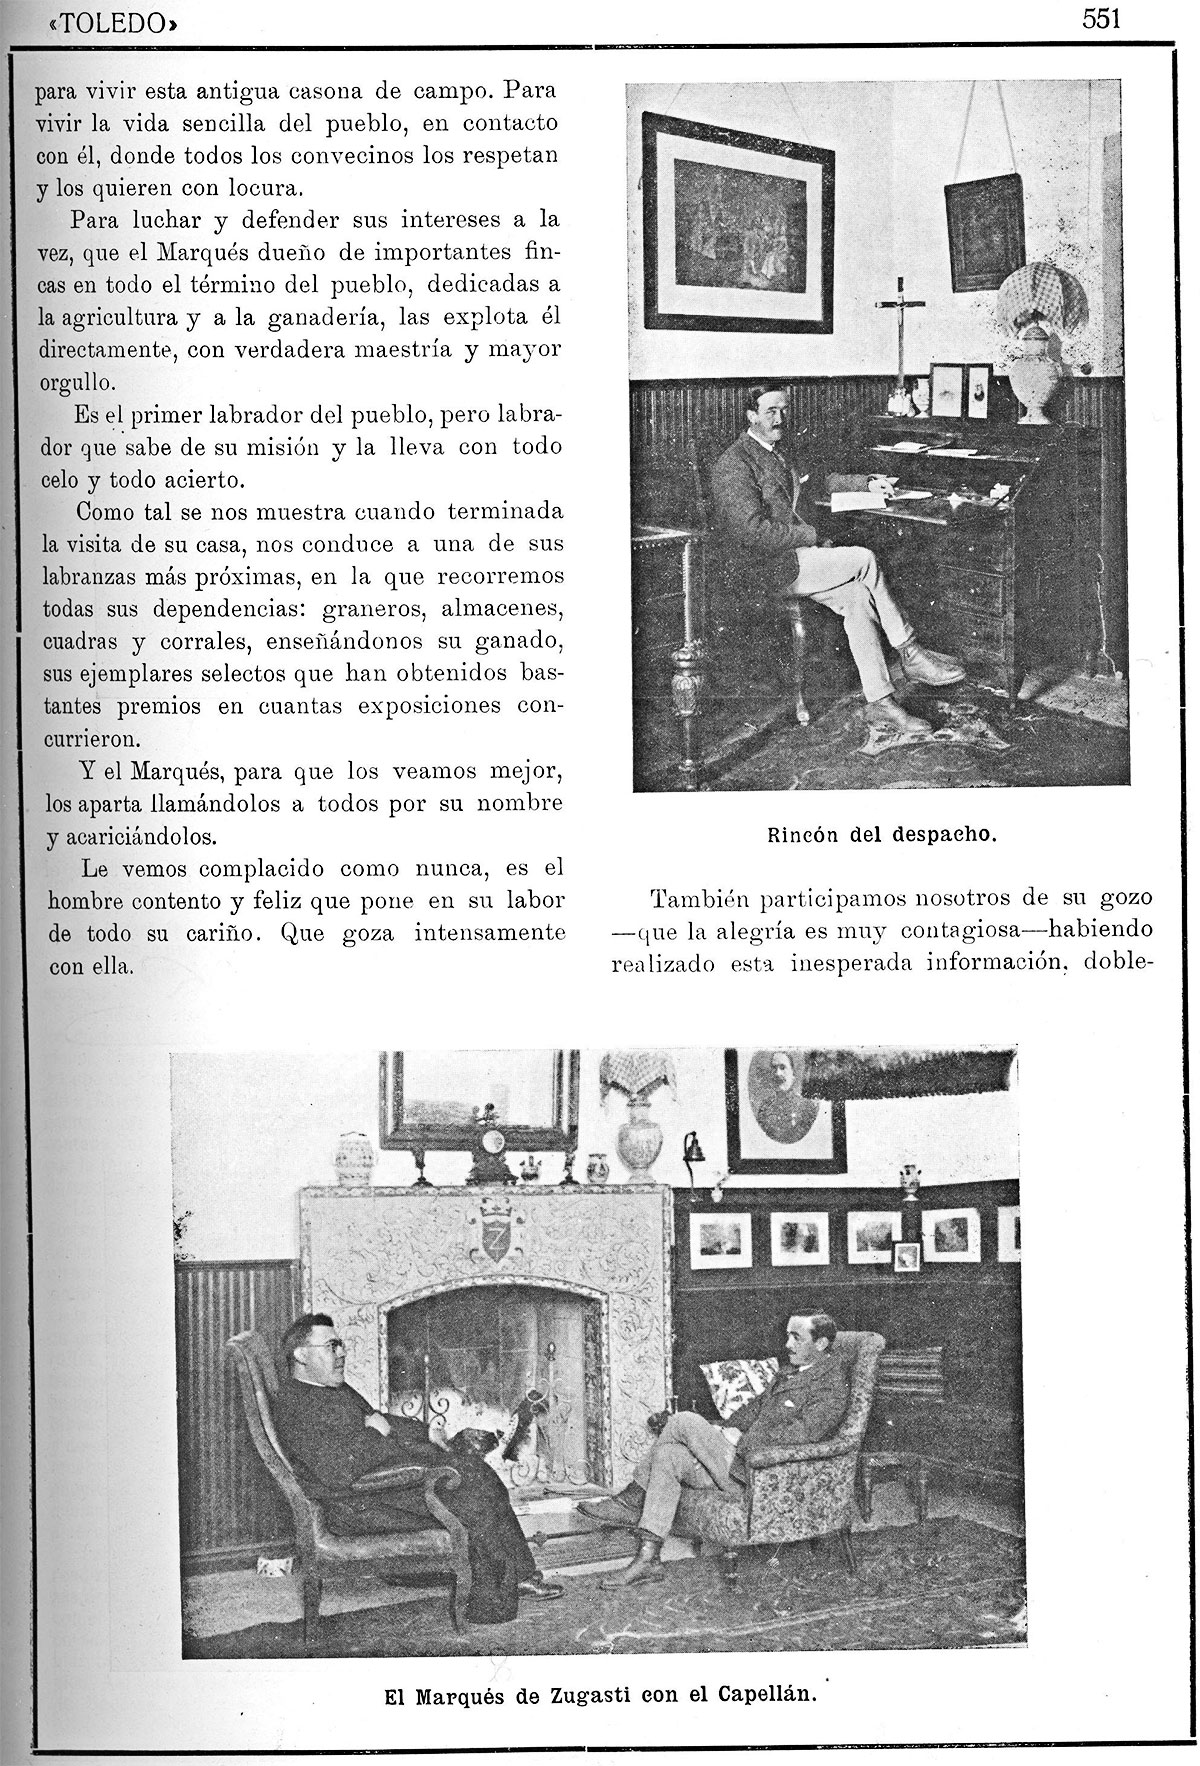 La casa-palacio de San Martín de Pusa. Revista de Arte, 1/1/1923